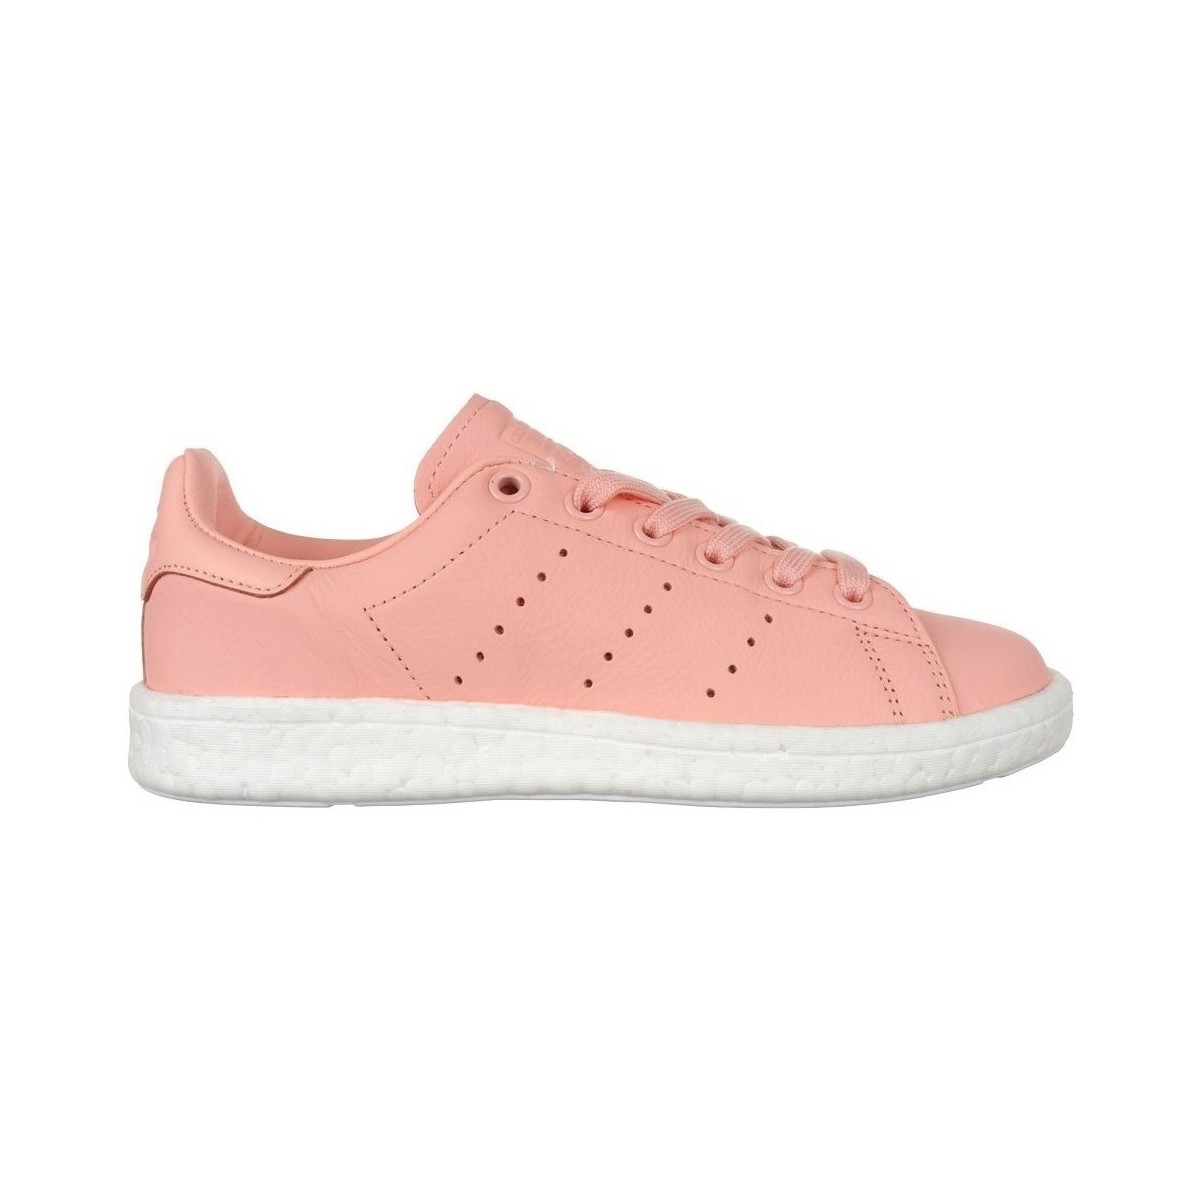 Pantofi Femei Pantofi sport Casual adidas Originals Stan Smith Boost roz